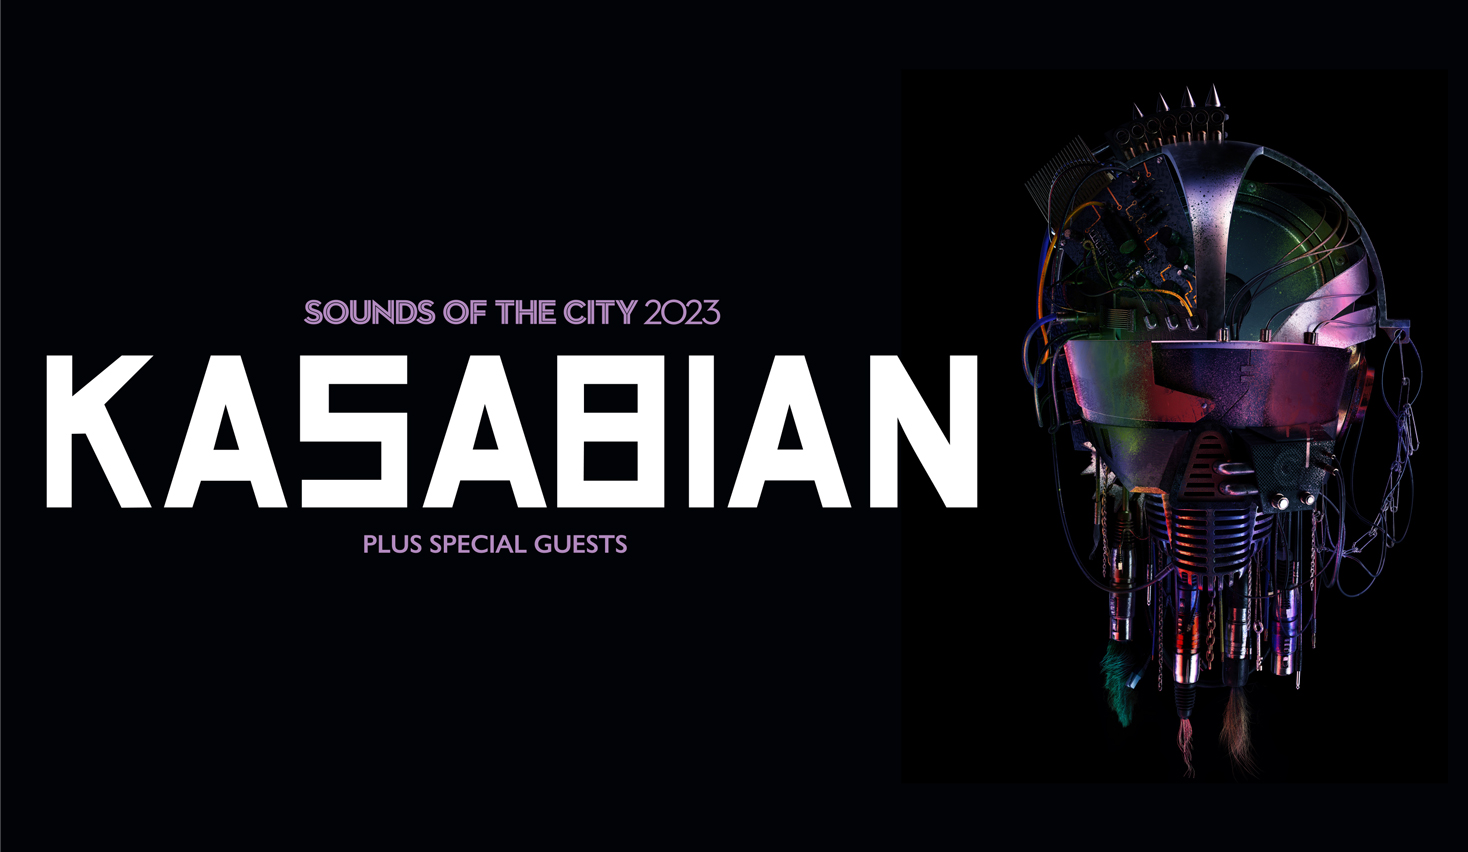 Kasabian – Sounds of the City